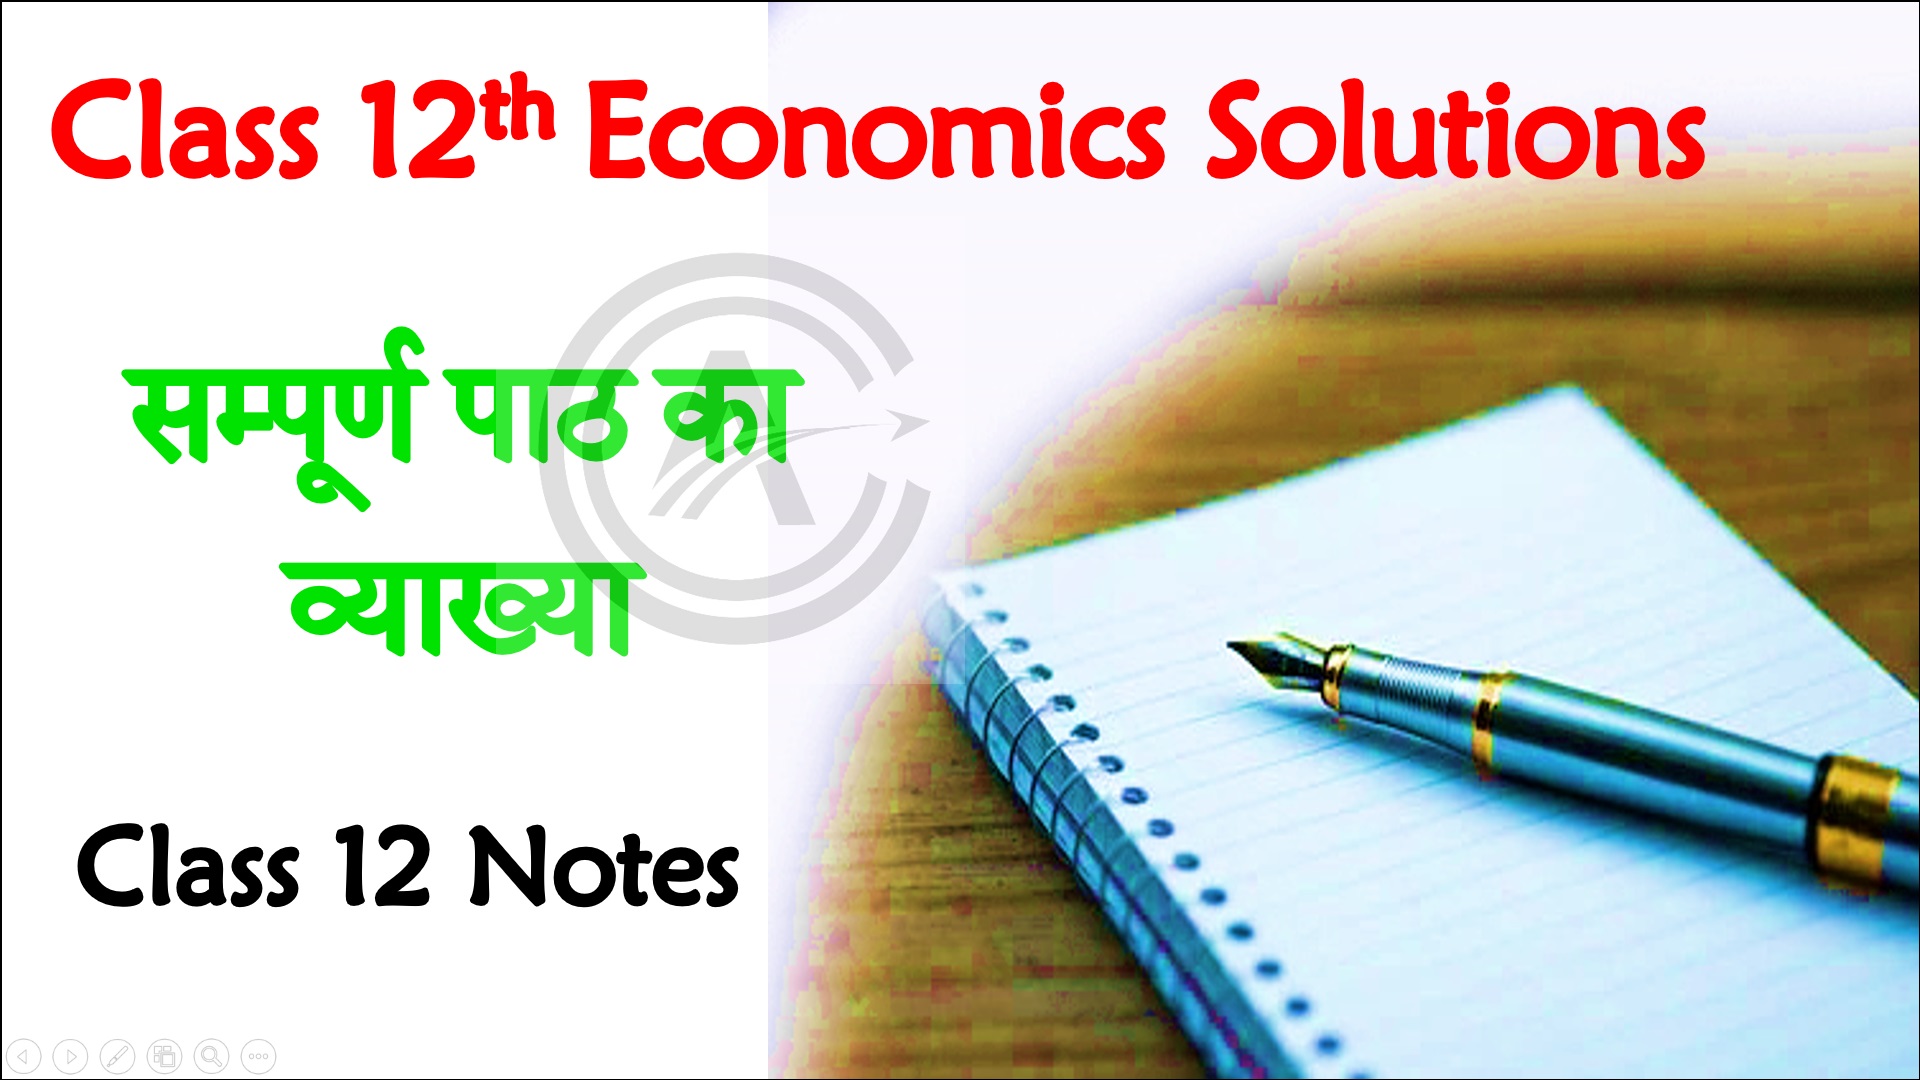 Bihar Board Class 12th Economics Objective Questions